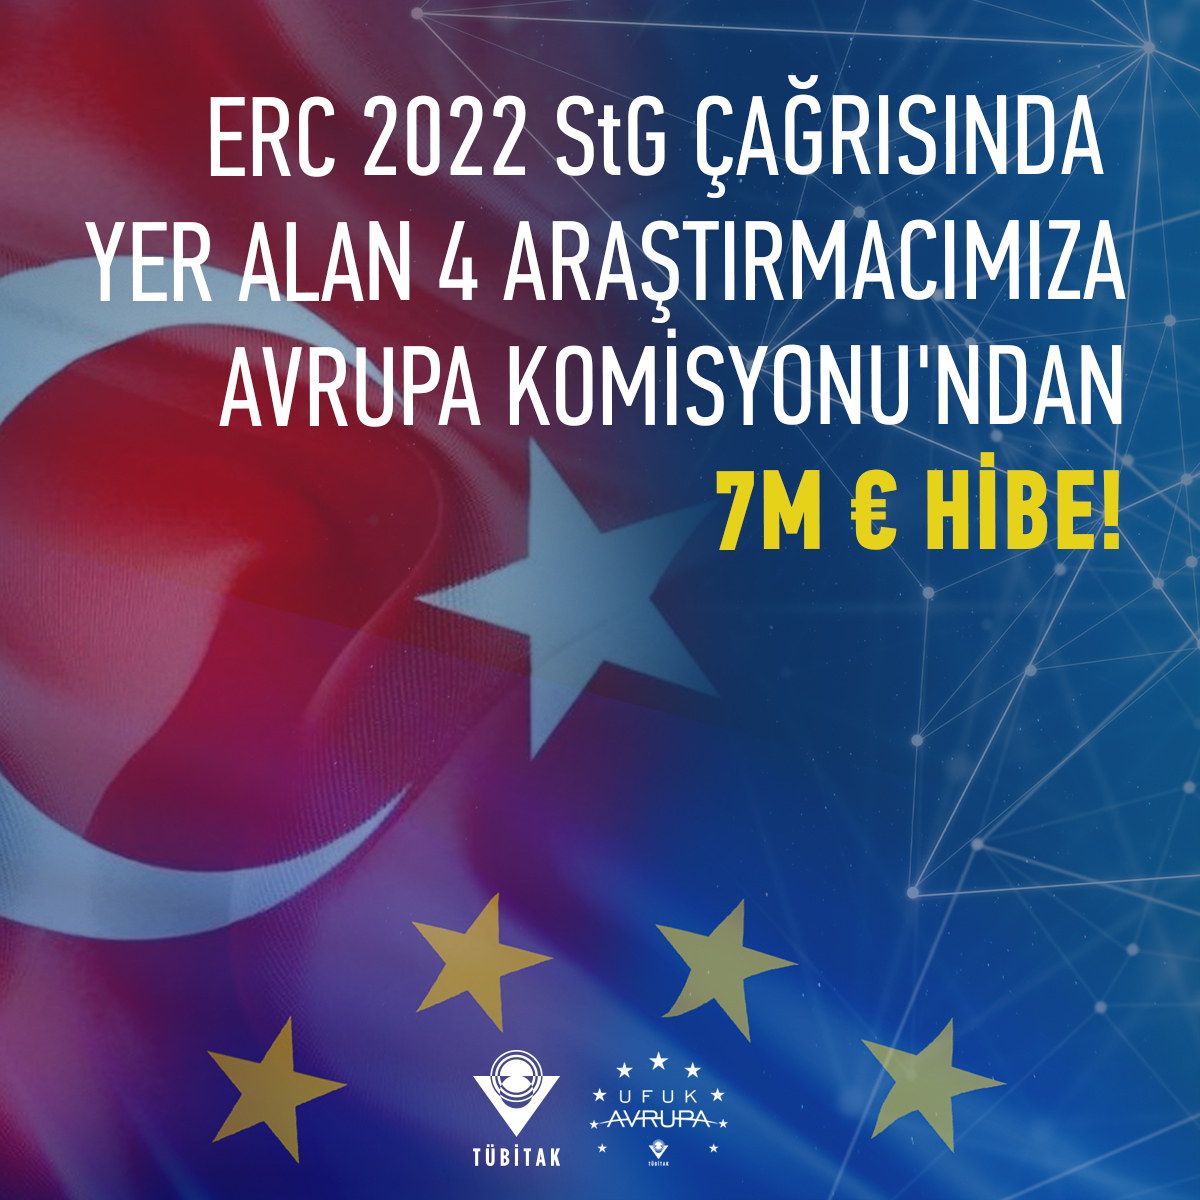 ERC 2022 StG çağrısında Türkiye’den 4 baş araştırmacımız toplam 7 Milyon € destek almaya hak kazandı!

@horizoneu @erc_research

#EUfunded  #FrontierResearch #ERCStG

Detaylar: ufukavrupa.org.tr/tr/haberler/er…